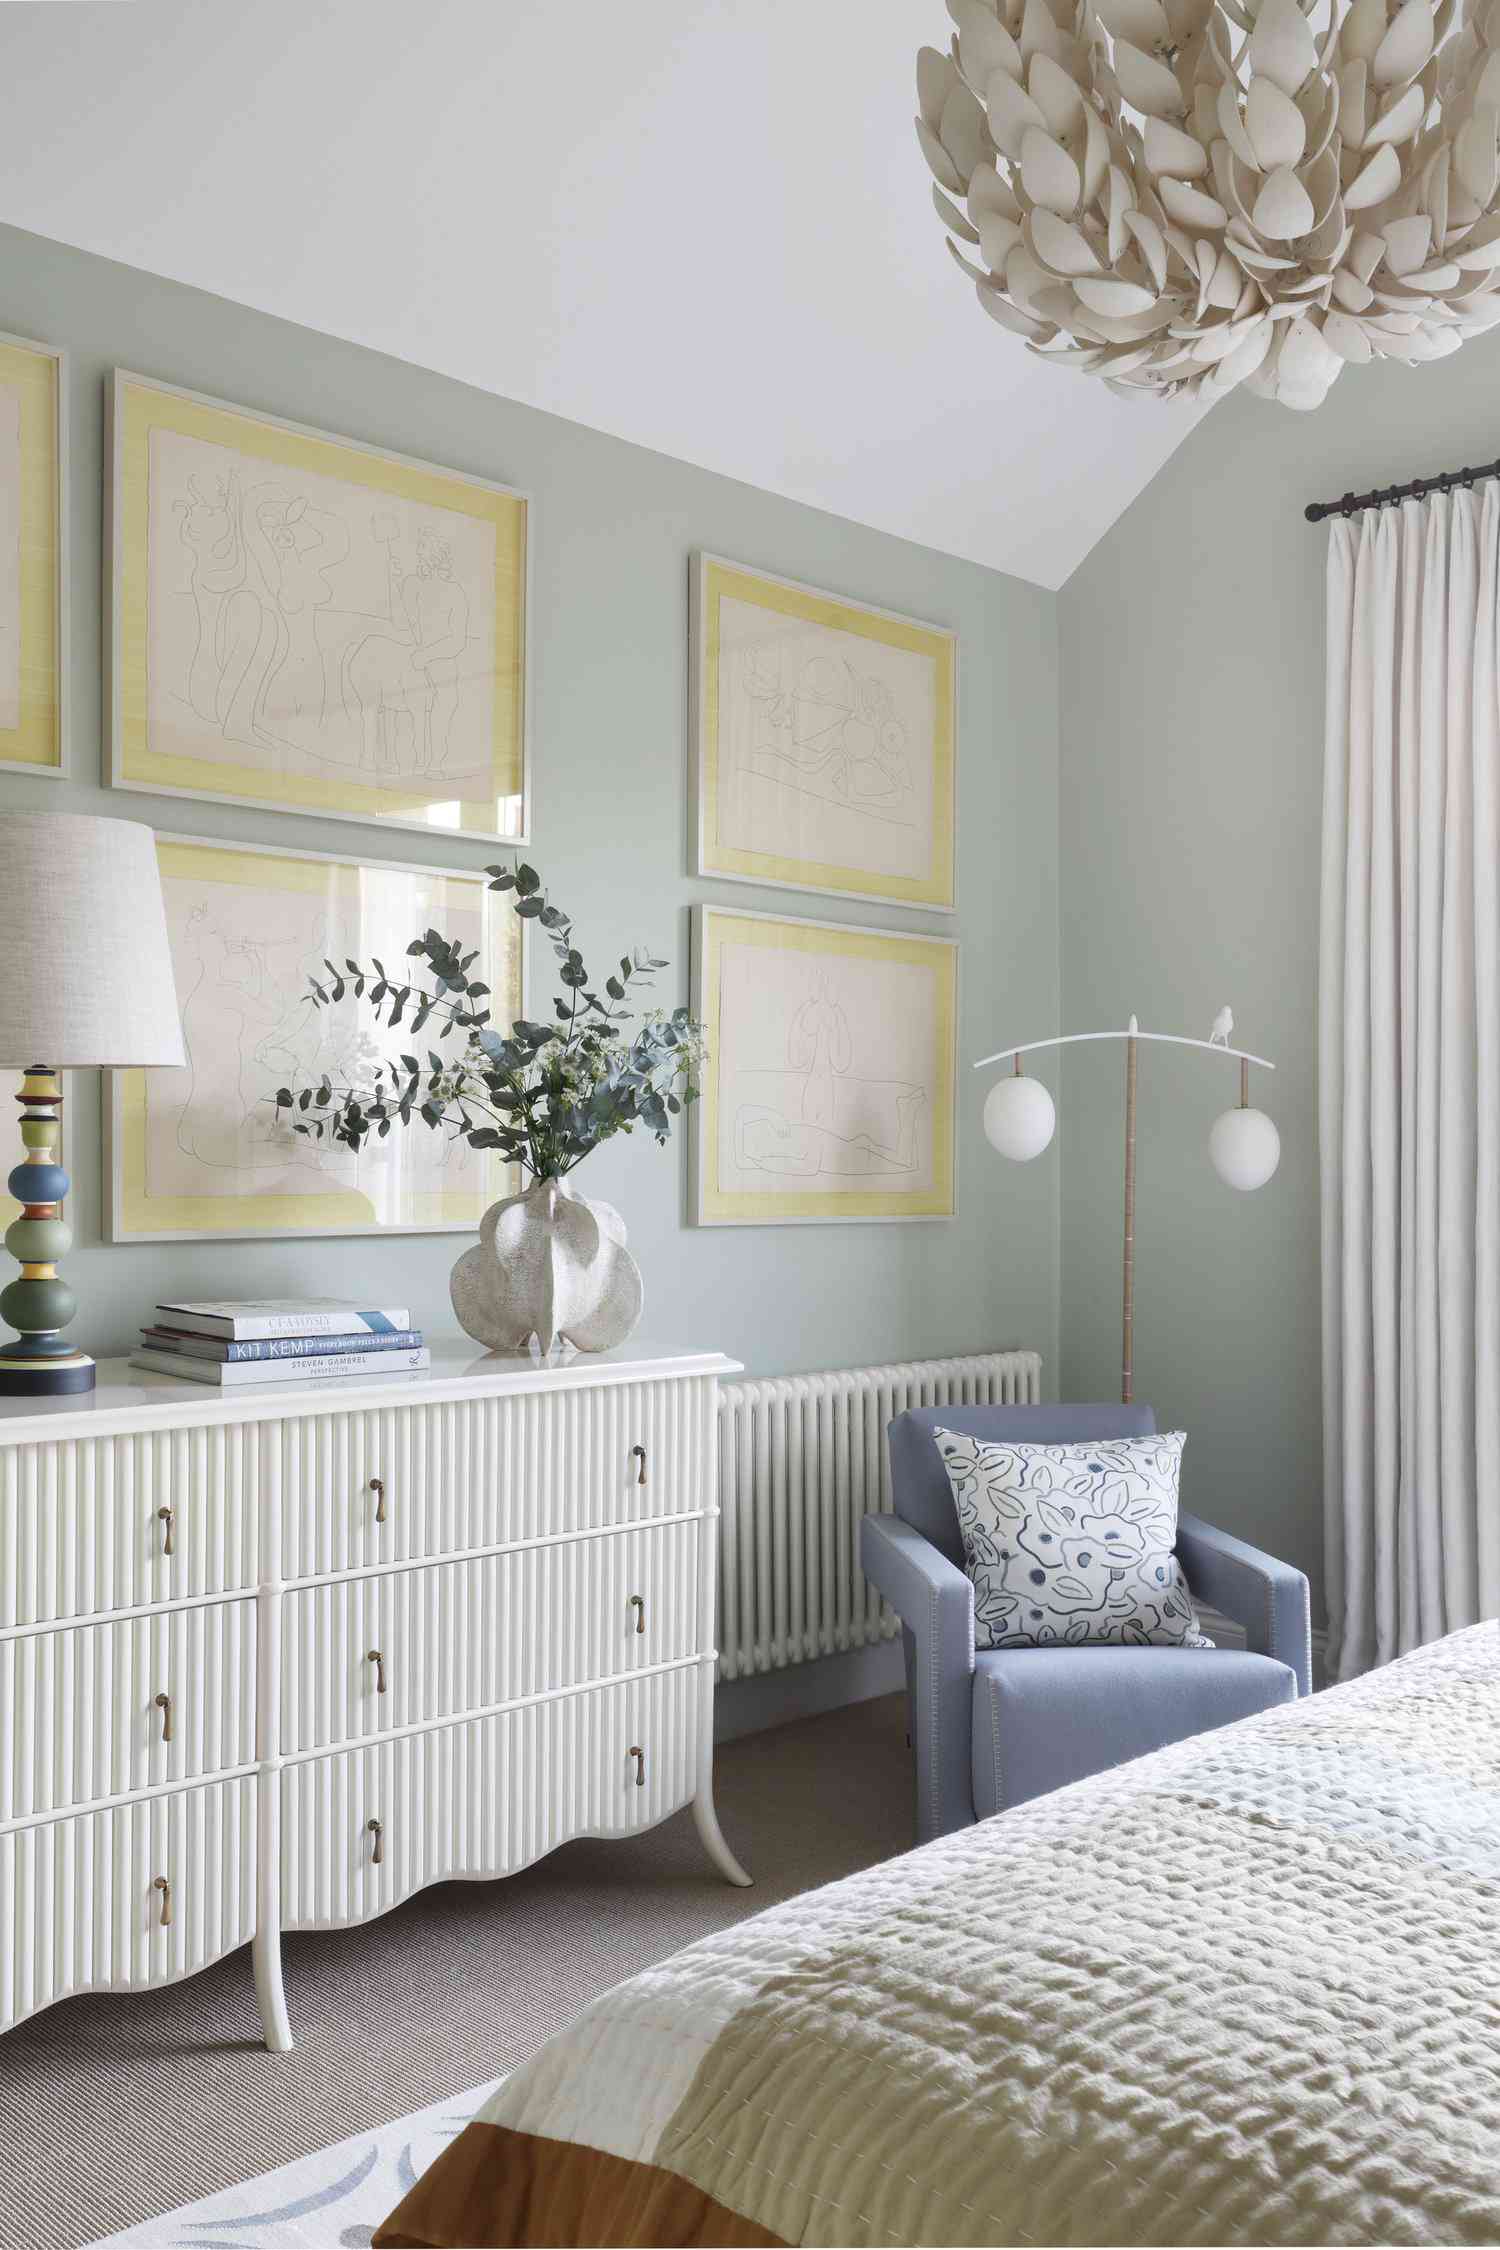 Chambre à coucher avec des murs vert seafoam et un fauteuil bleu clair dans le coin